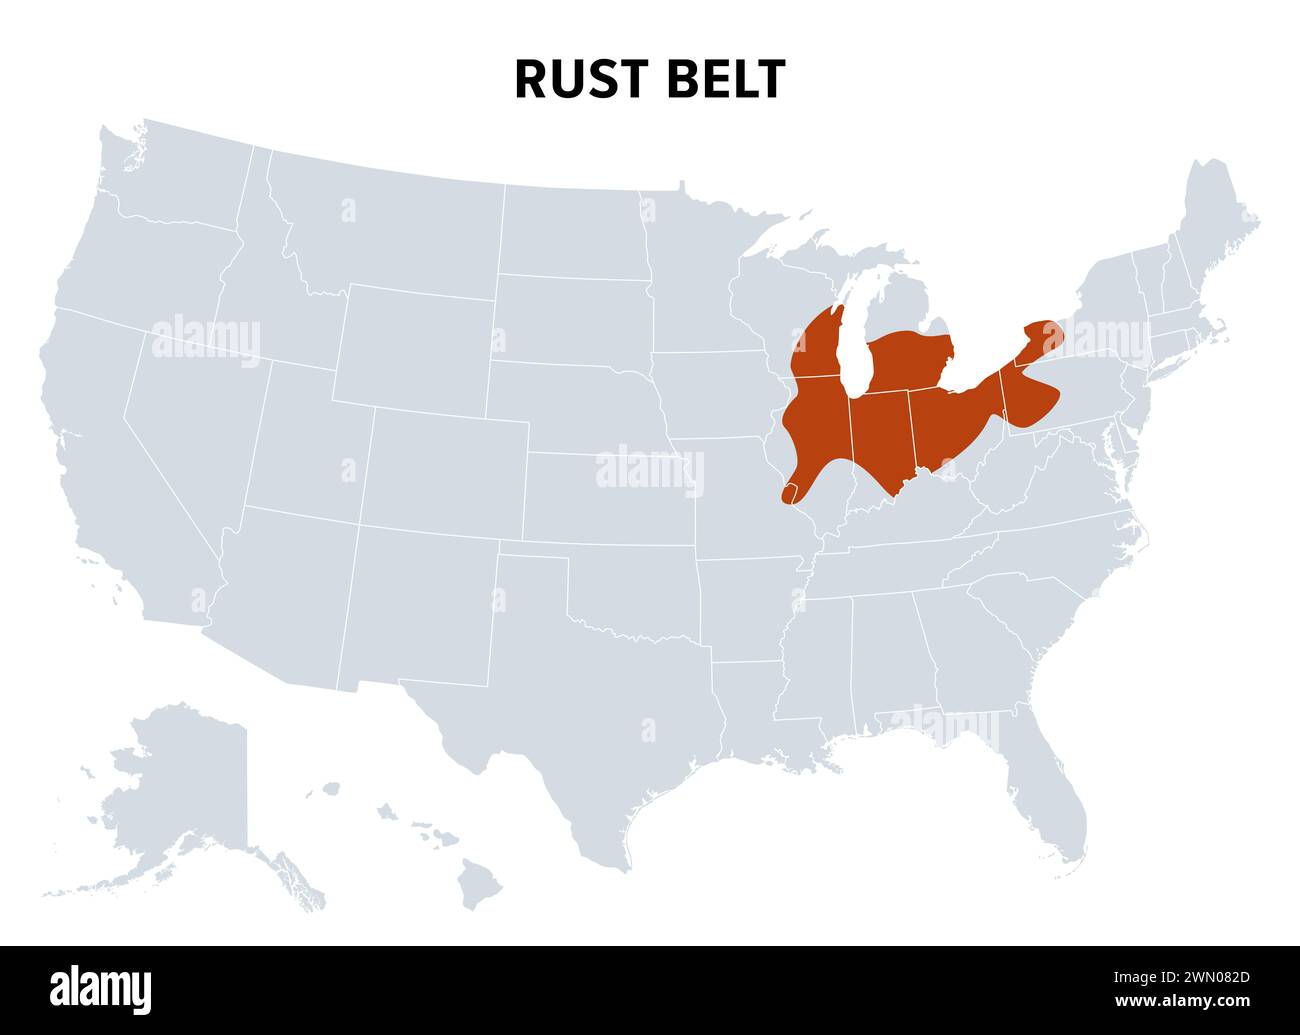 RUST Belt degli Stati Uniti, mappa politica. Regione degli Stati Uniti nord-orientali e centro-occidentali, in declino industriale ed economico. Foto Stock